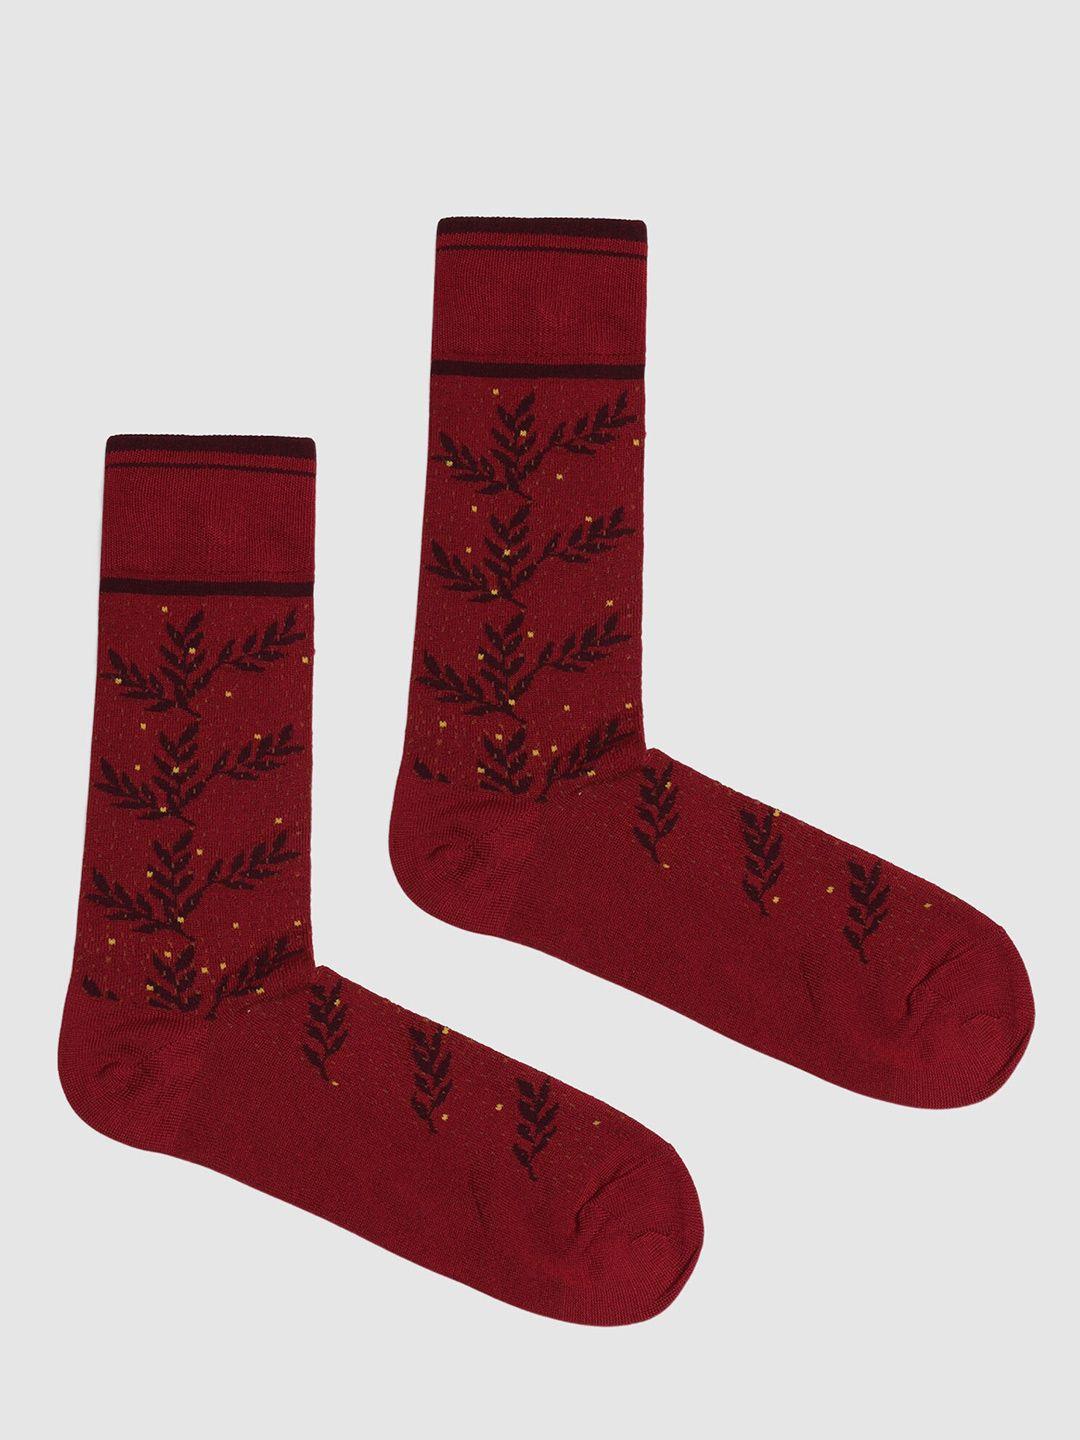 blackberrys-men-pack-of-2-patterned-calf-length-cotton-socks